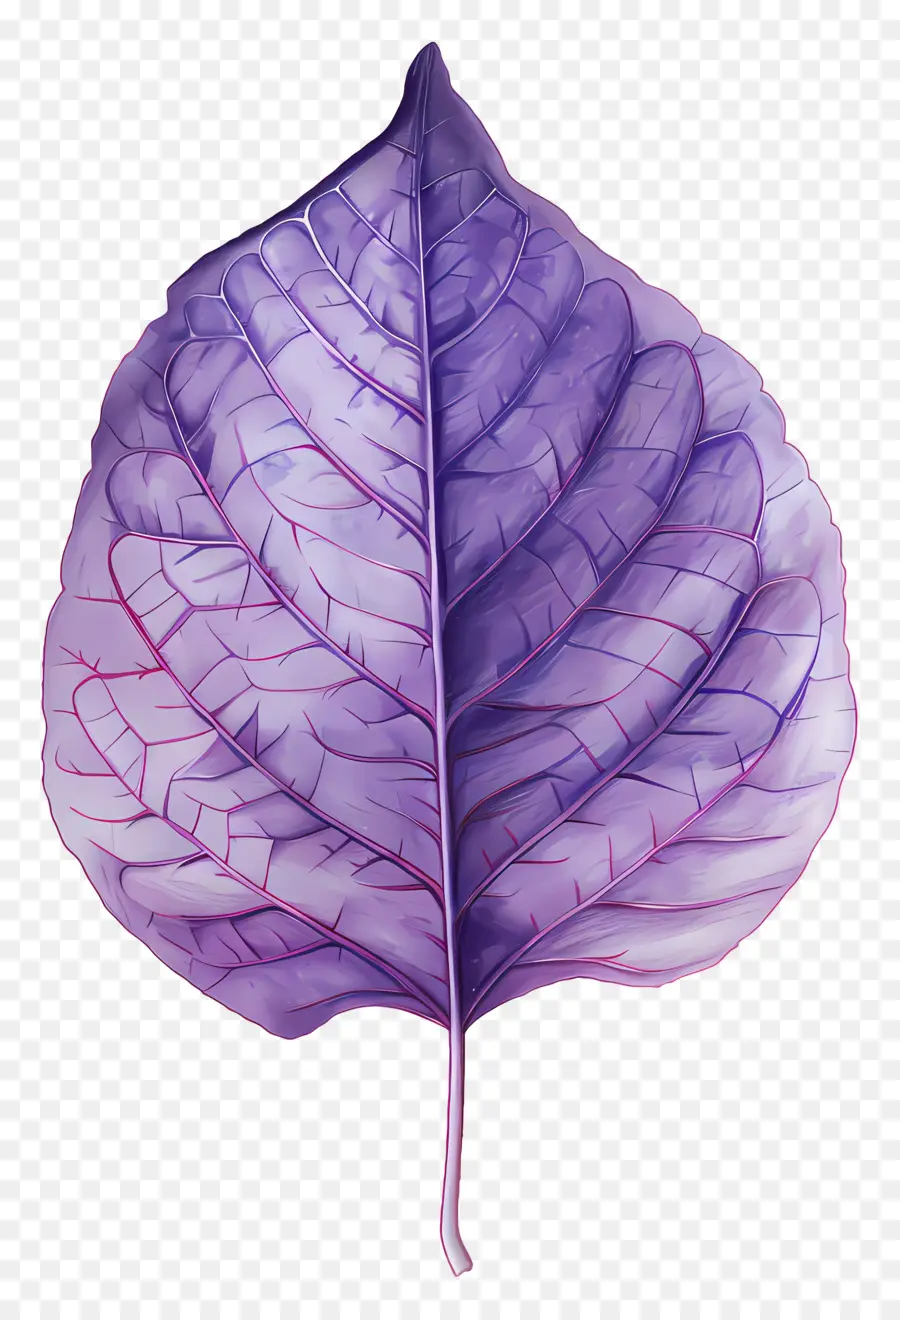 foglia texture - Pittura ad acquerello di foglie viola con vene